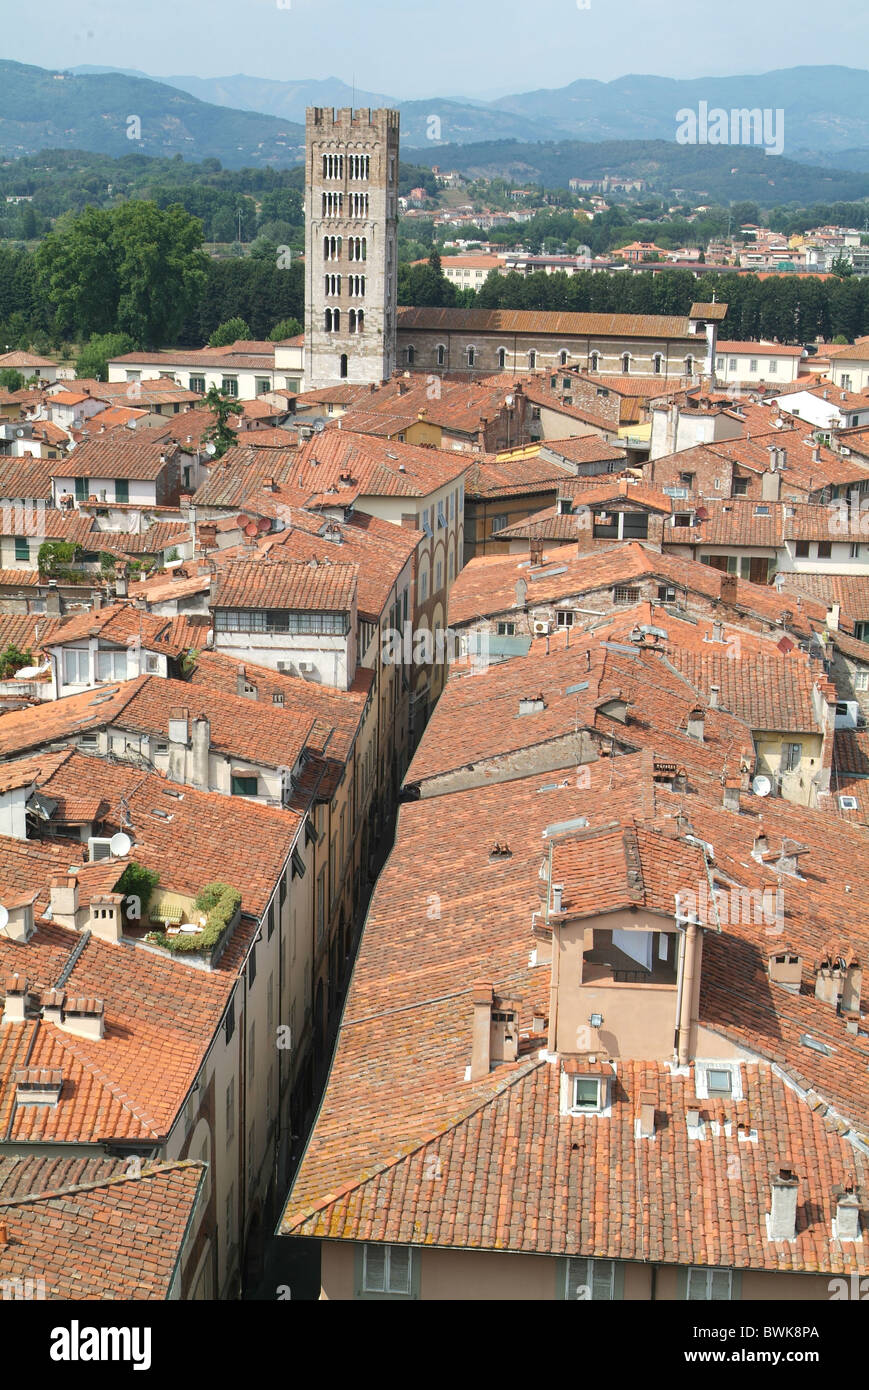 Italia Europa Toscana Toscana Lucca città panoramica sui tetti della città vecchia Foto Stock